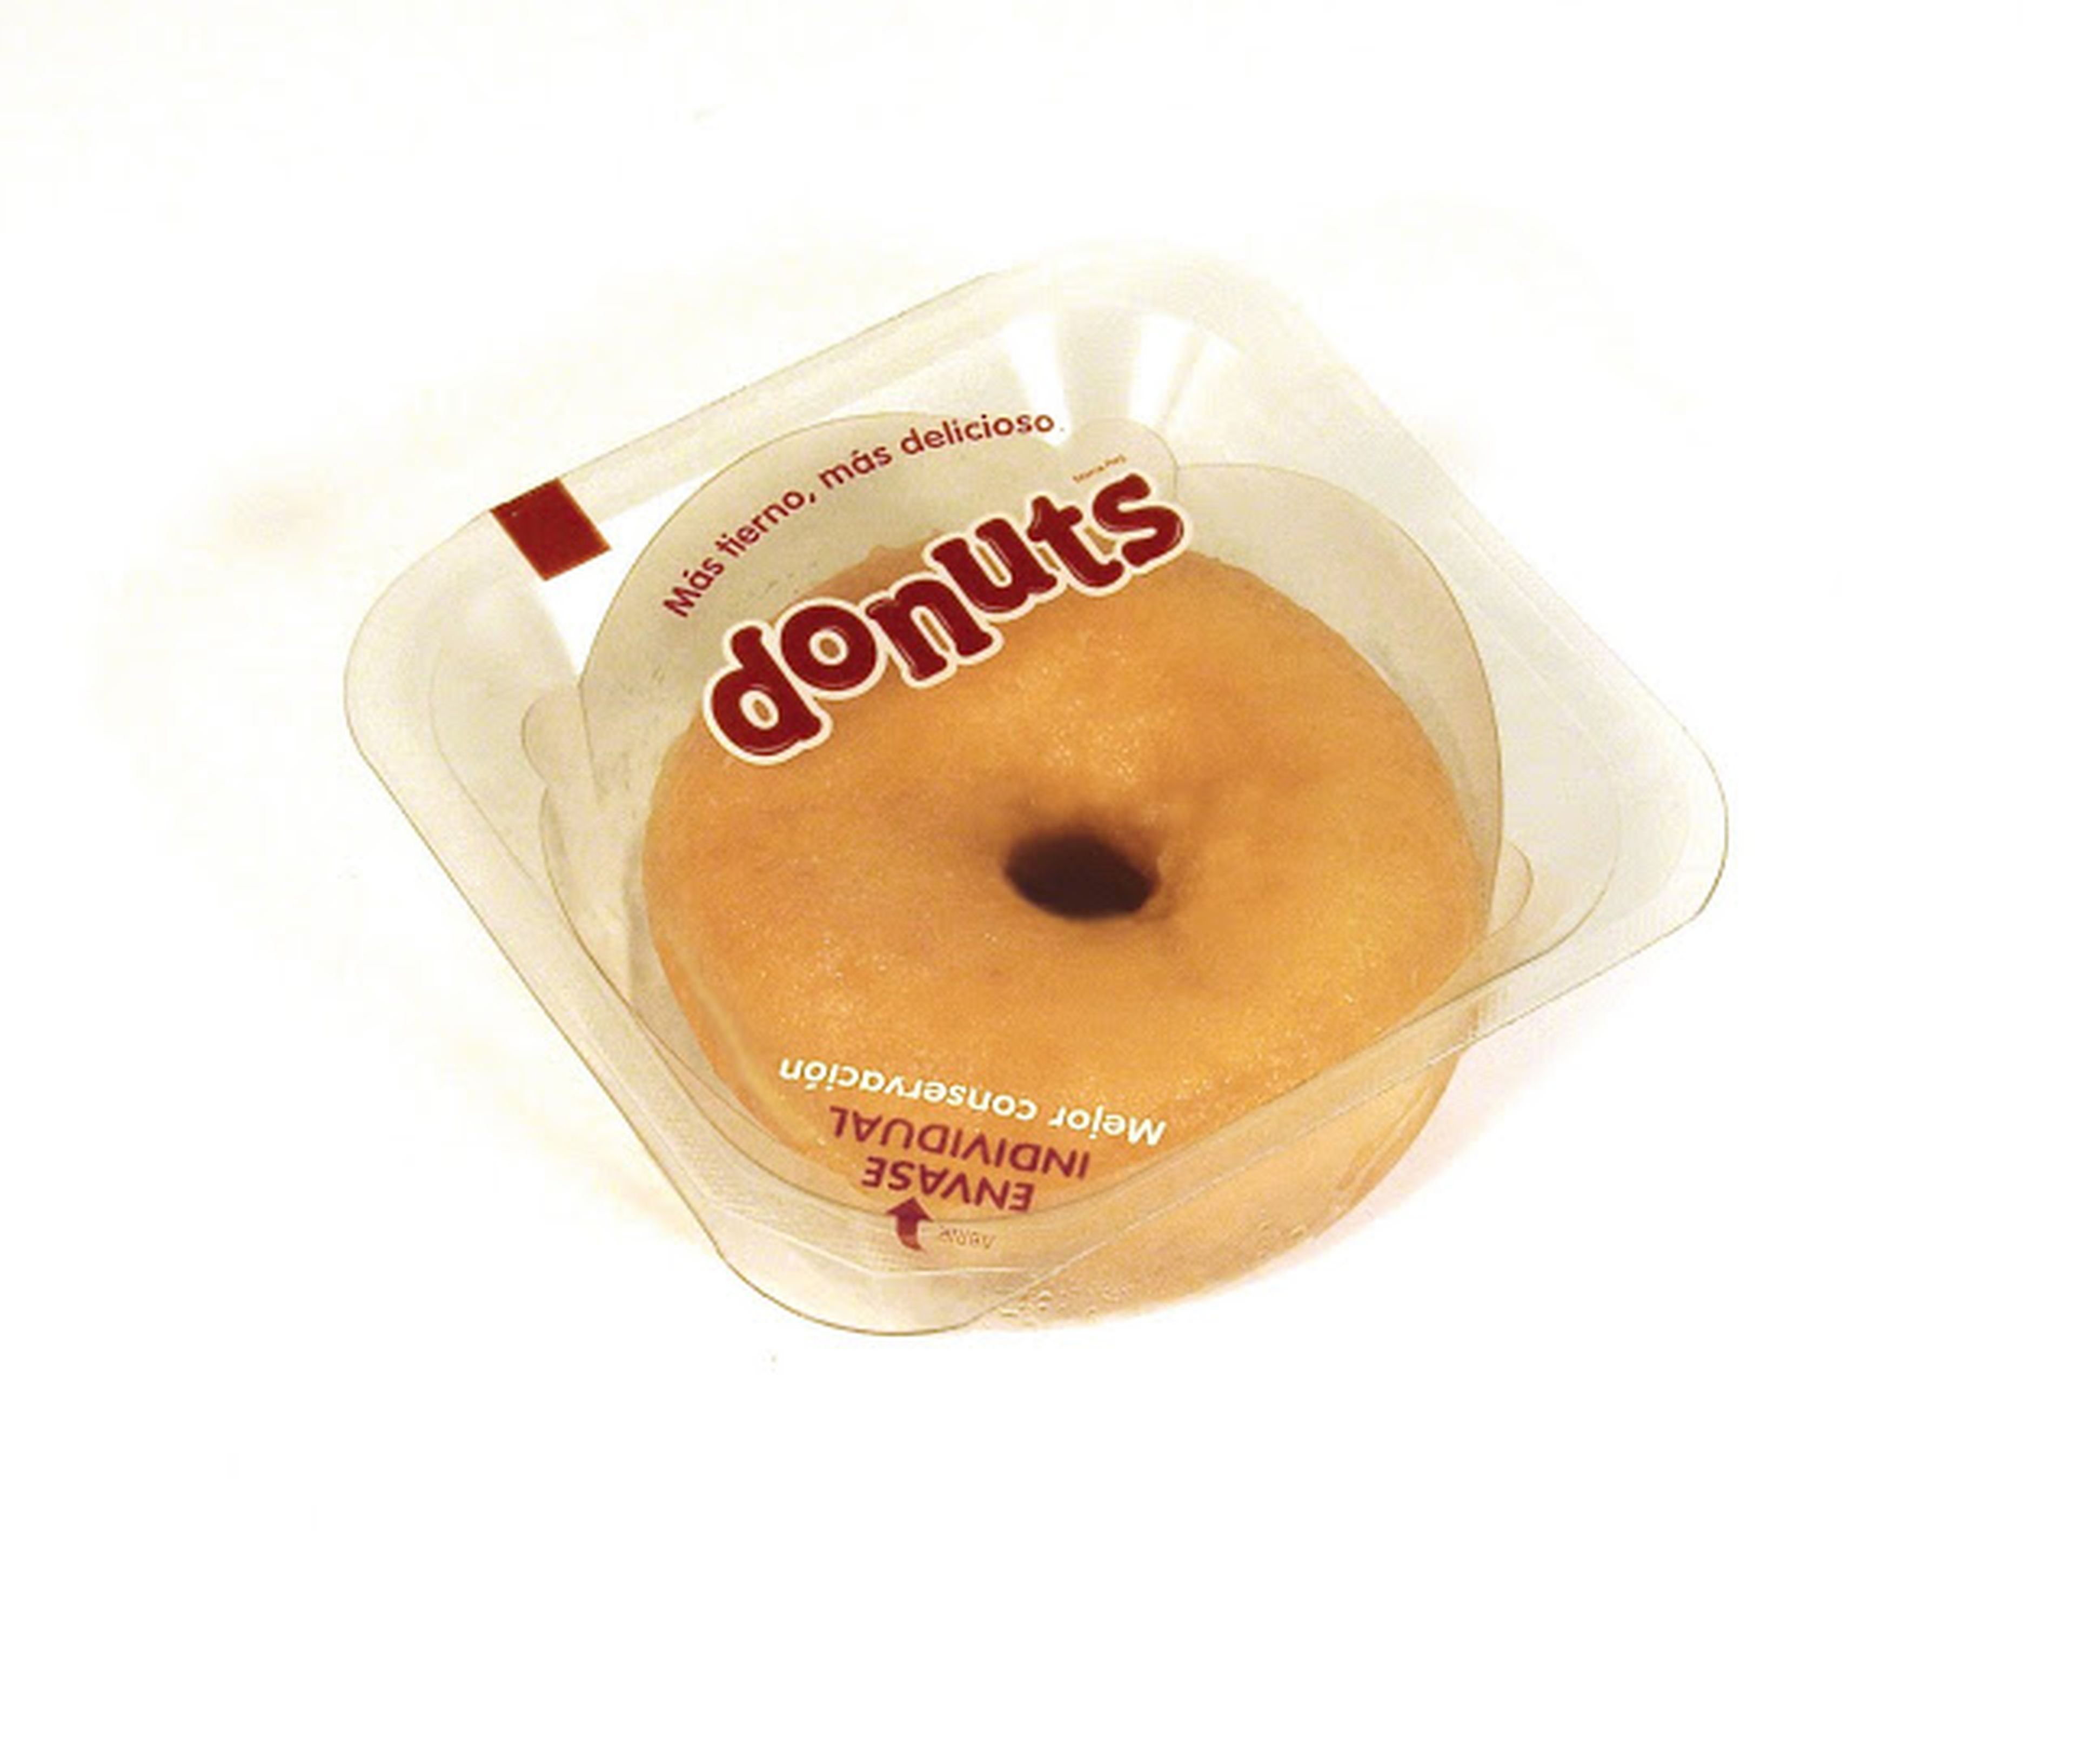 Donuts individual